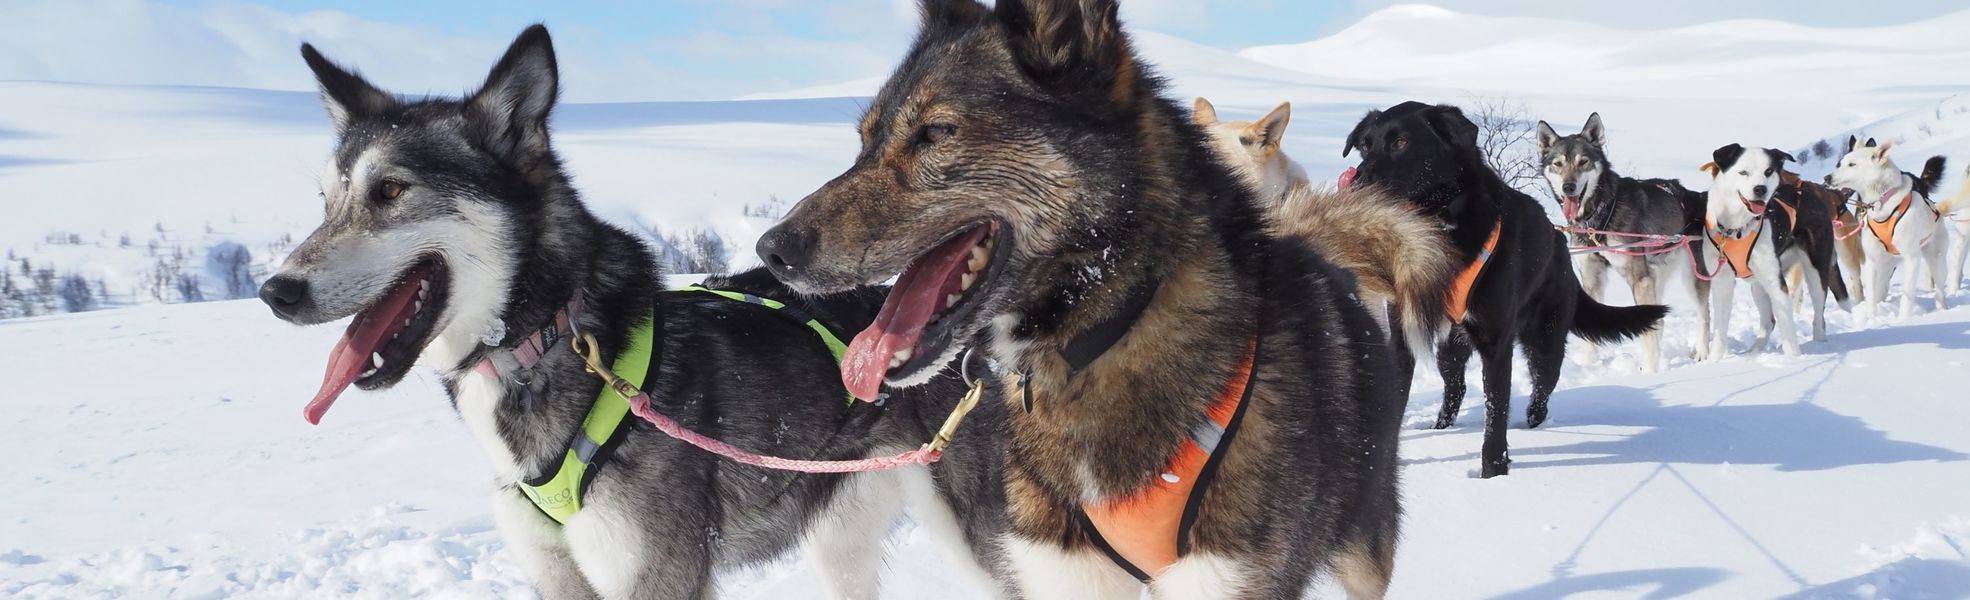 Huskys in Lappland - Freiwilligenarbeit mit Hunden und Katzen